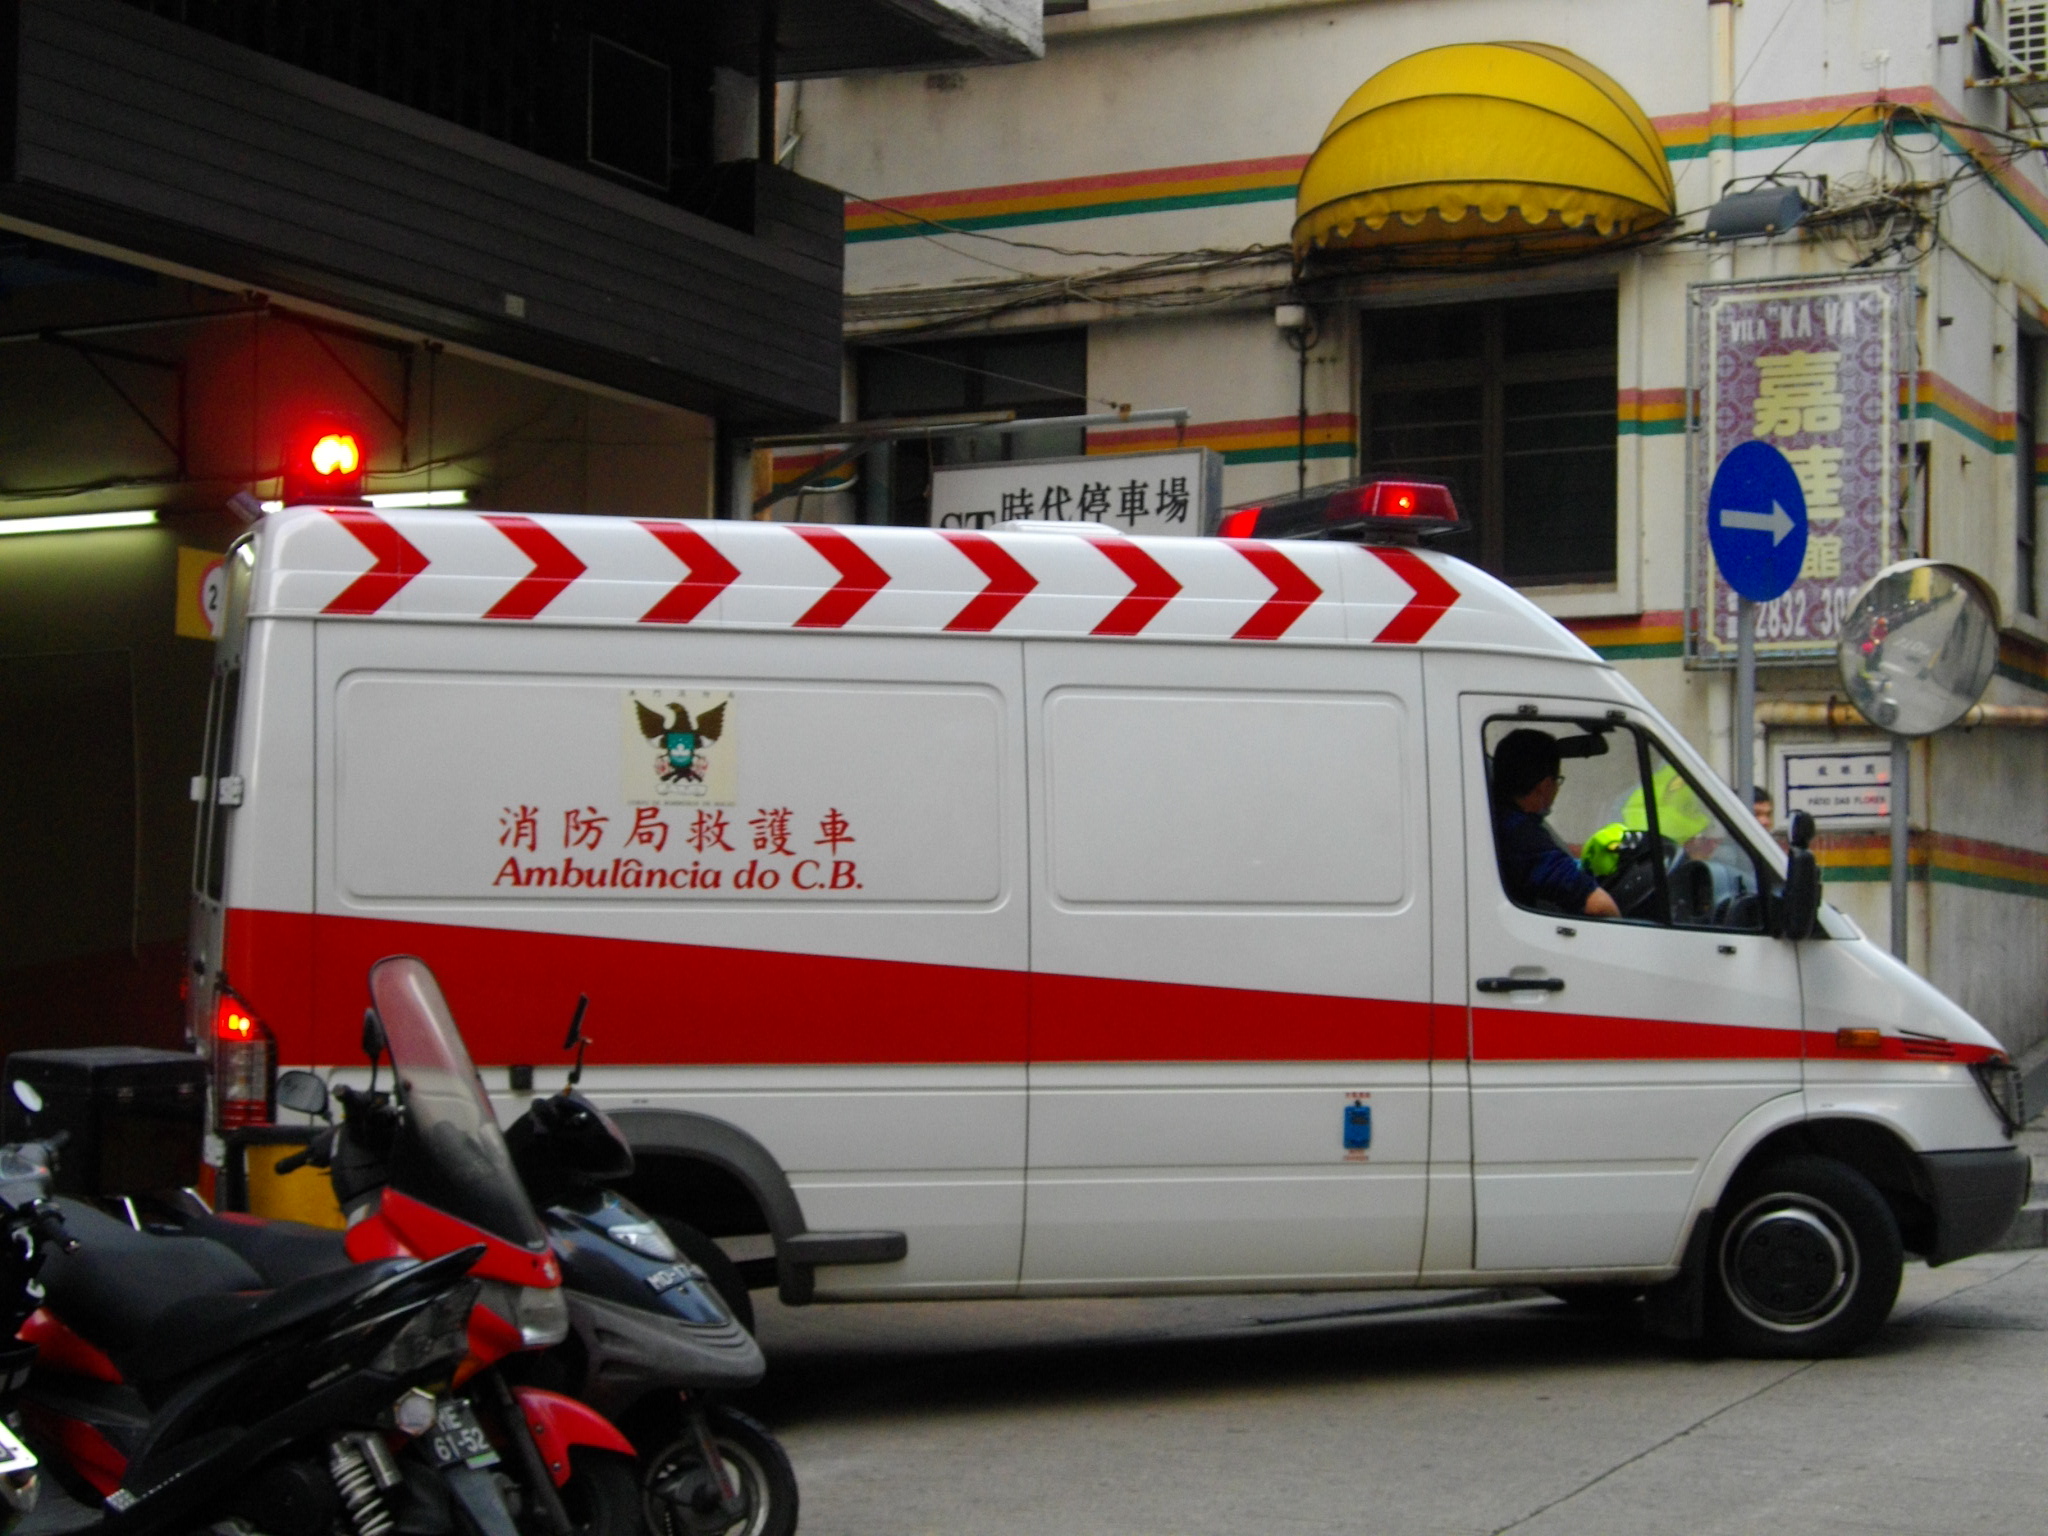 Ambulance_in_Macau.JPG